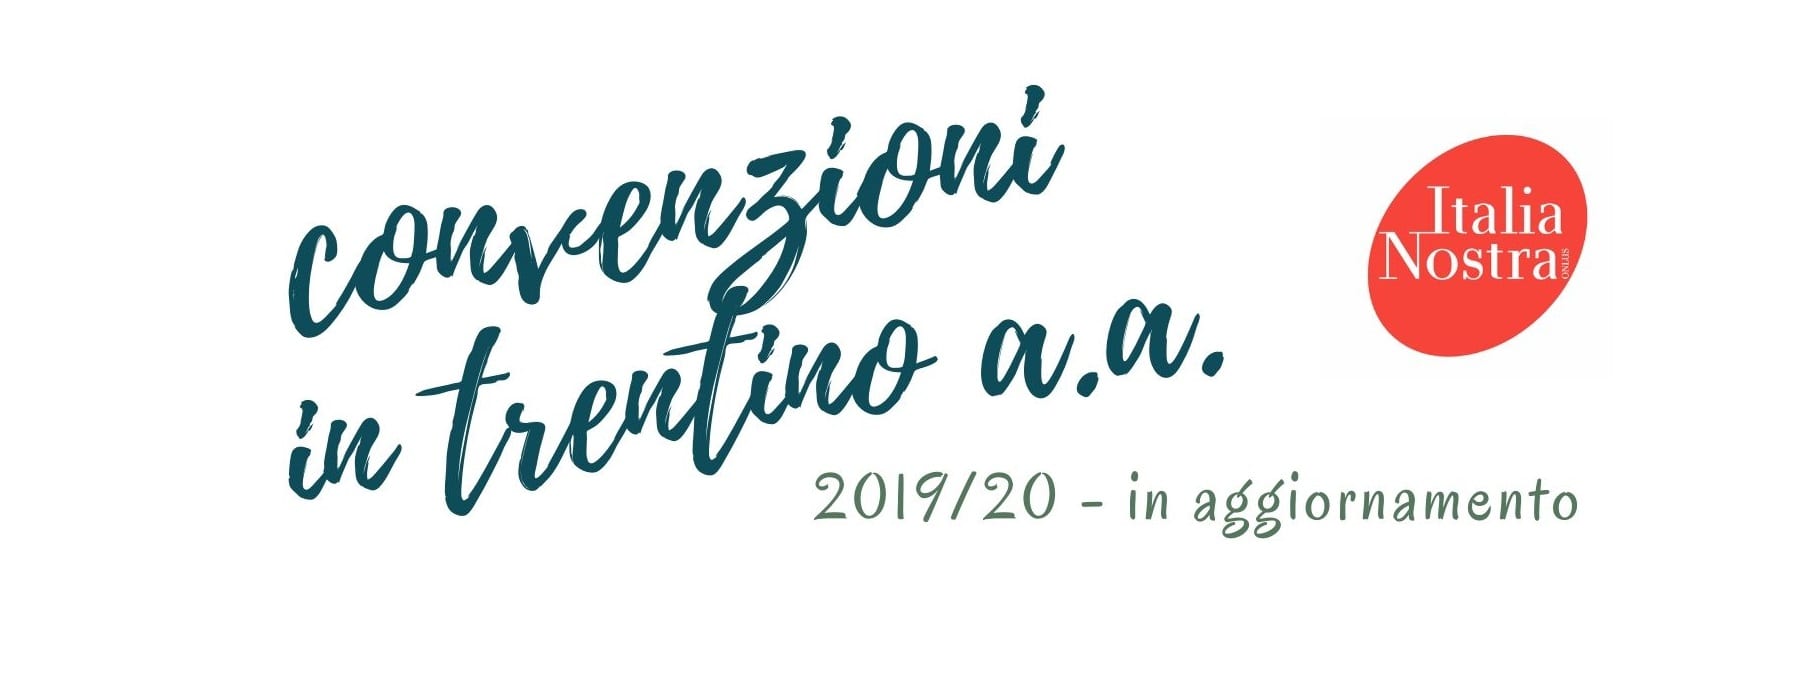 Convenzioni Italia Nostra sezione Trentino